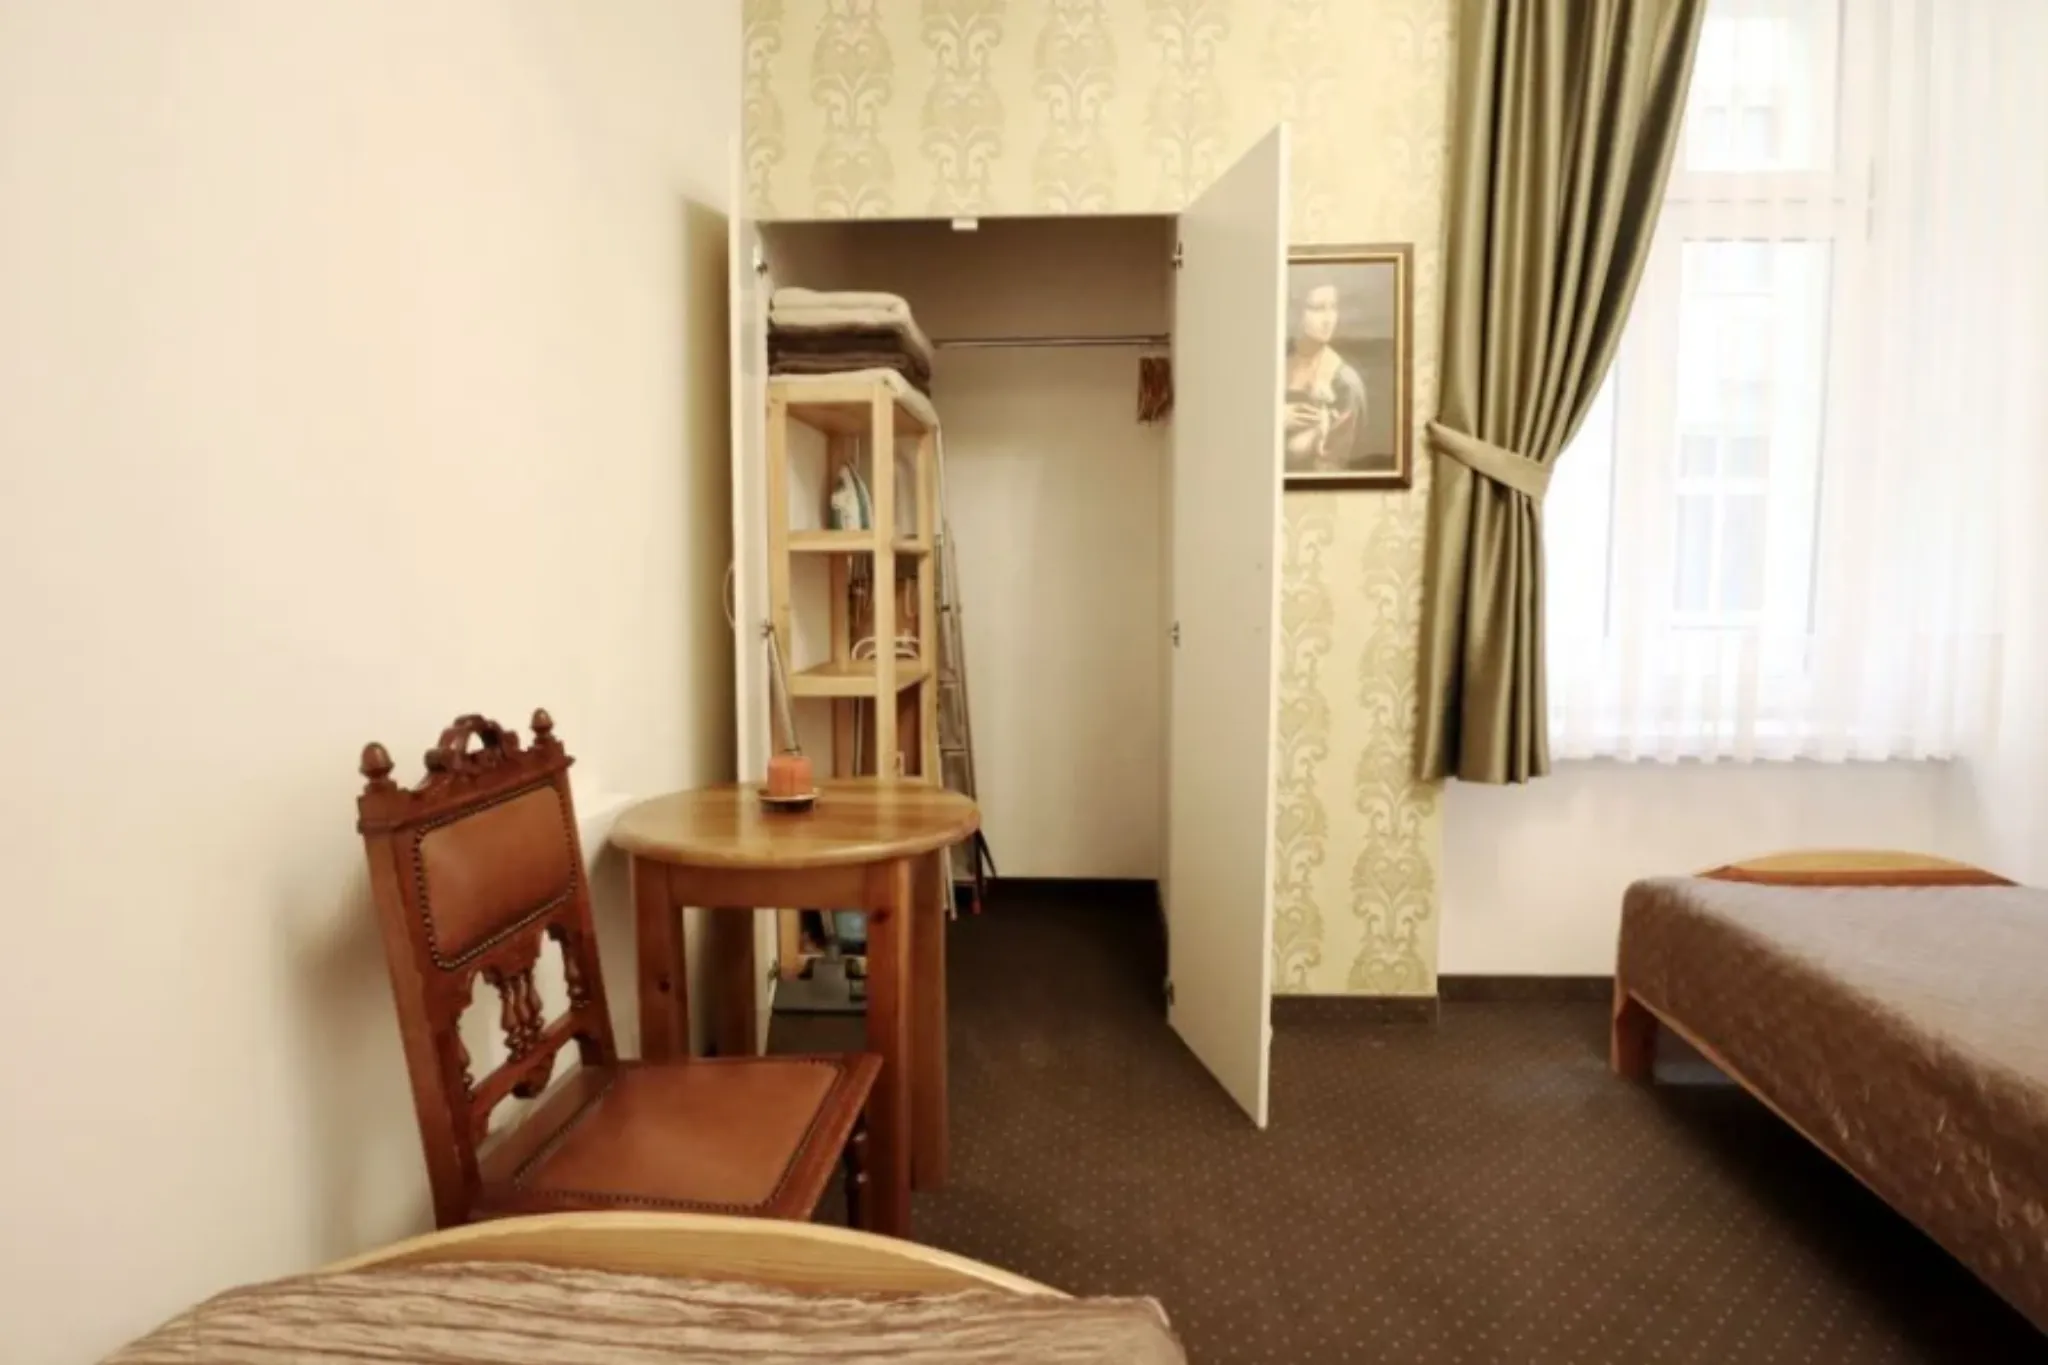 Kazimierz mieszkanie sprzedam, 39m2, 2 pokoje - Mieszkanie na sprzedaż Kraków